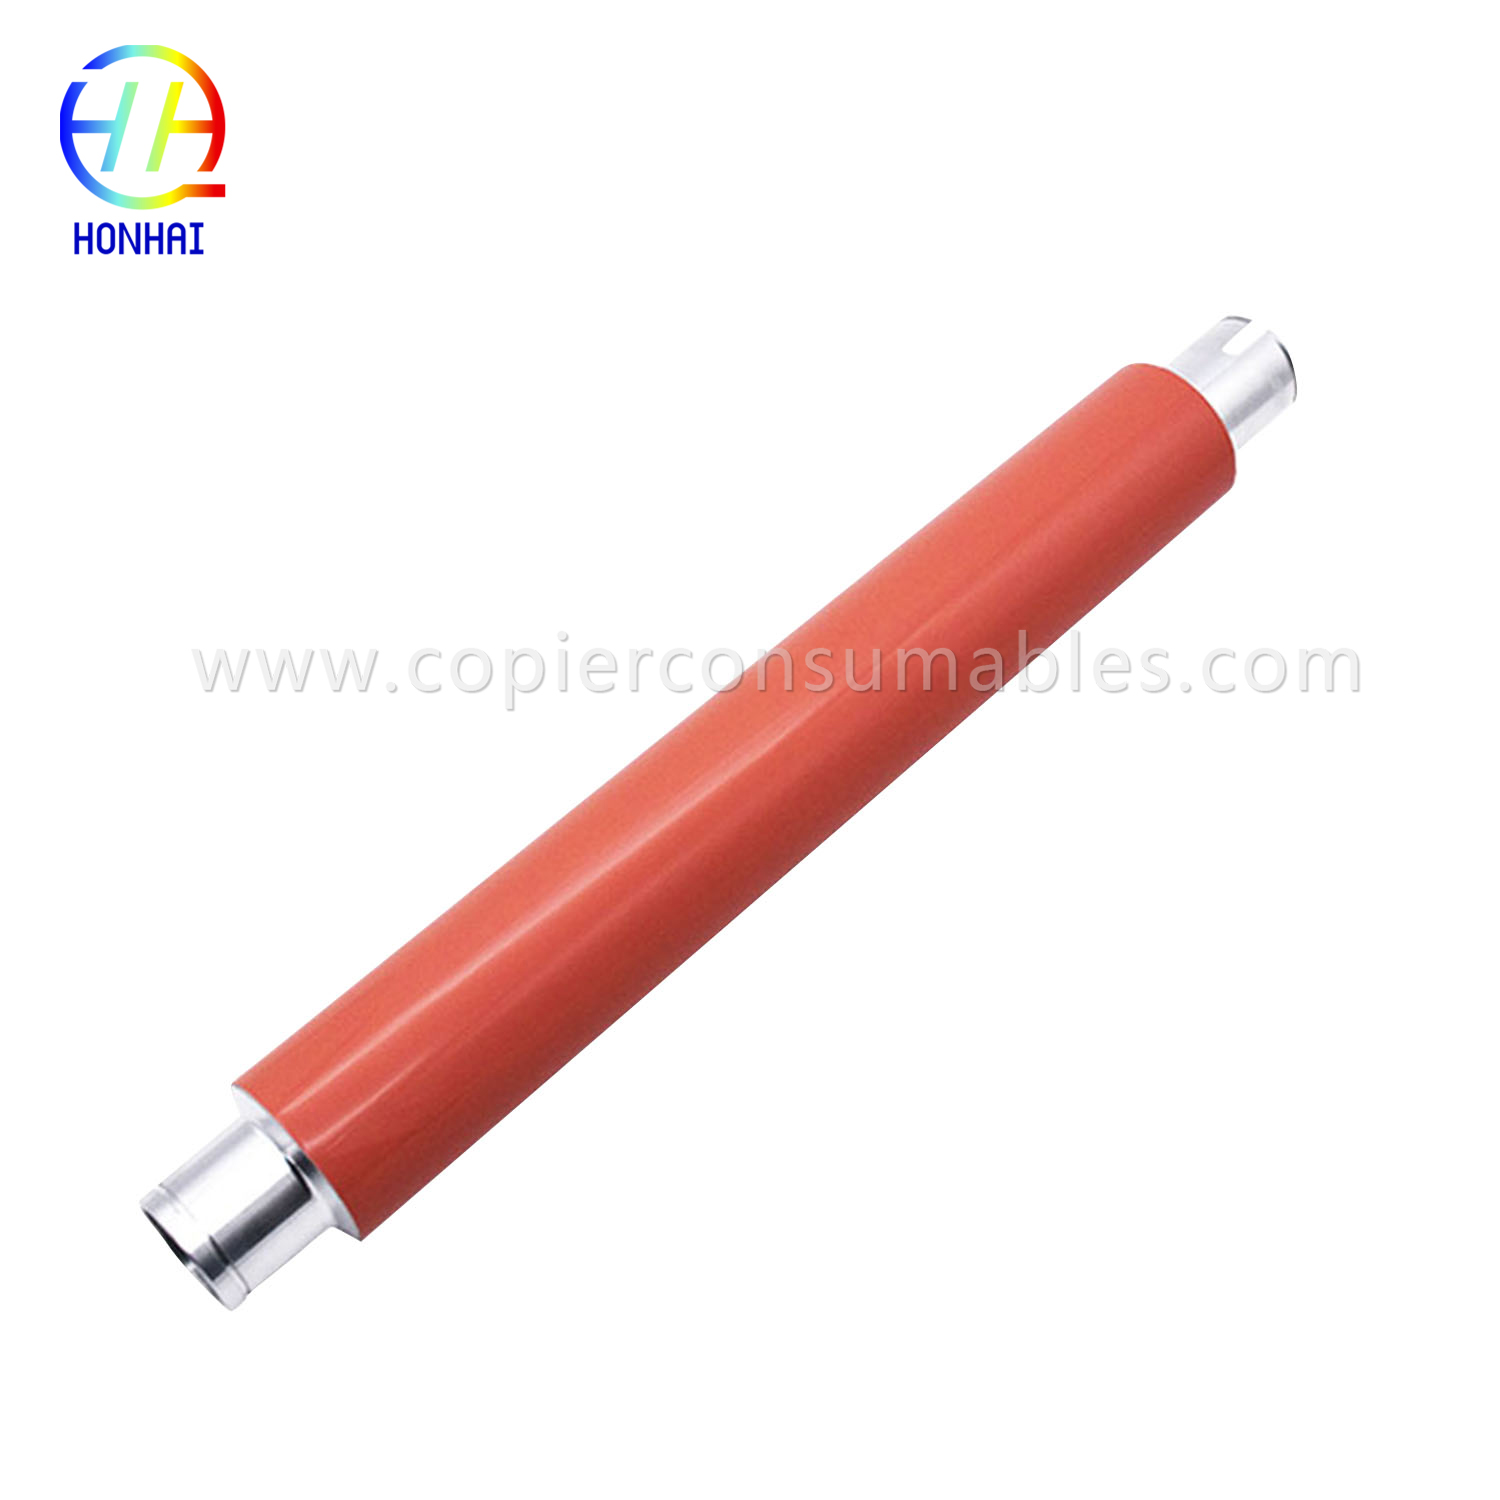 Upper Fuser Roller for HP Laserjet 9000 9040 9050 (RB2-5948-000) 要橙色那条-1 拷贝